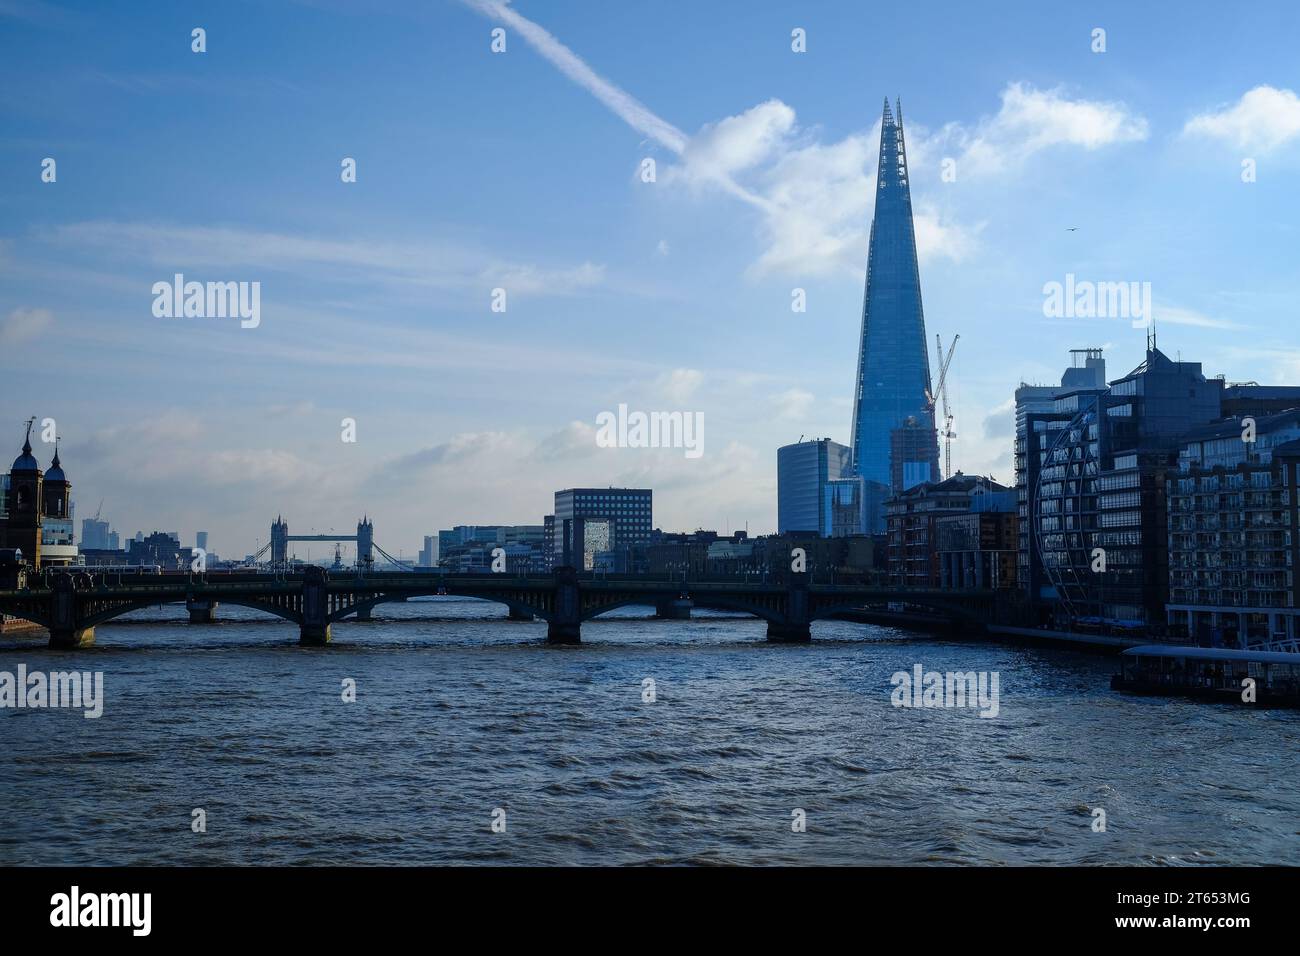 Skyline von London: Der legendäre Shard dominiert das Stadtbild und symbolisiert Modernität gegenüber der klassischen Silhouette Londons. Stockfoto